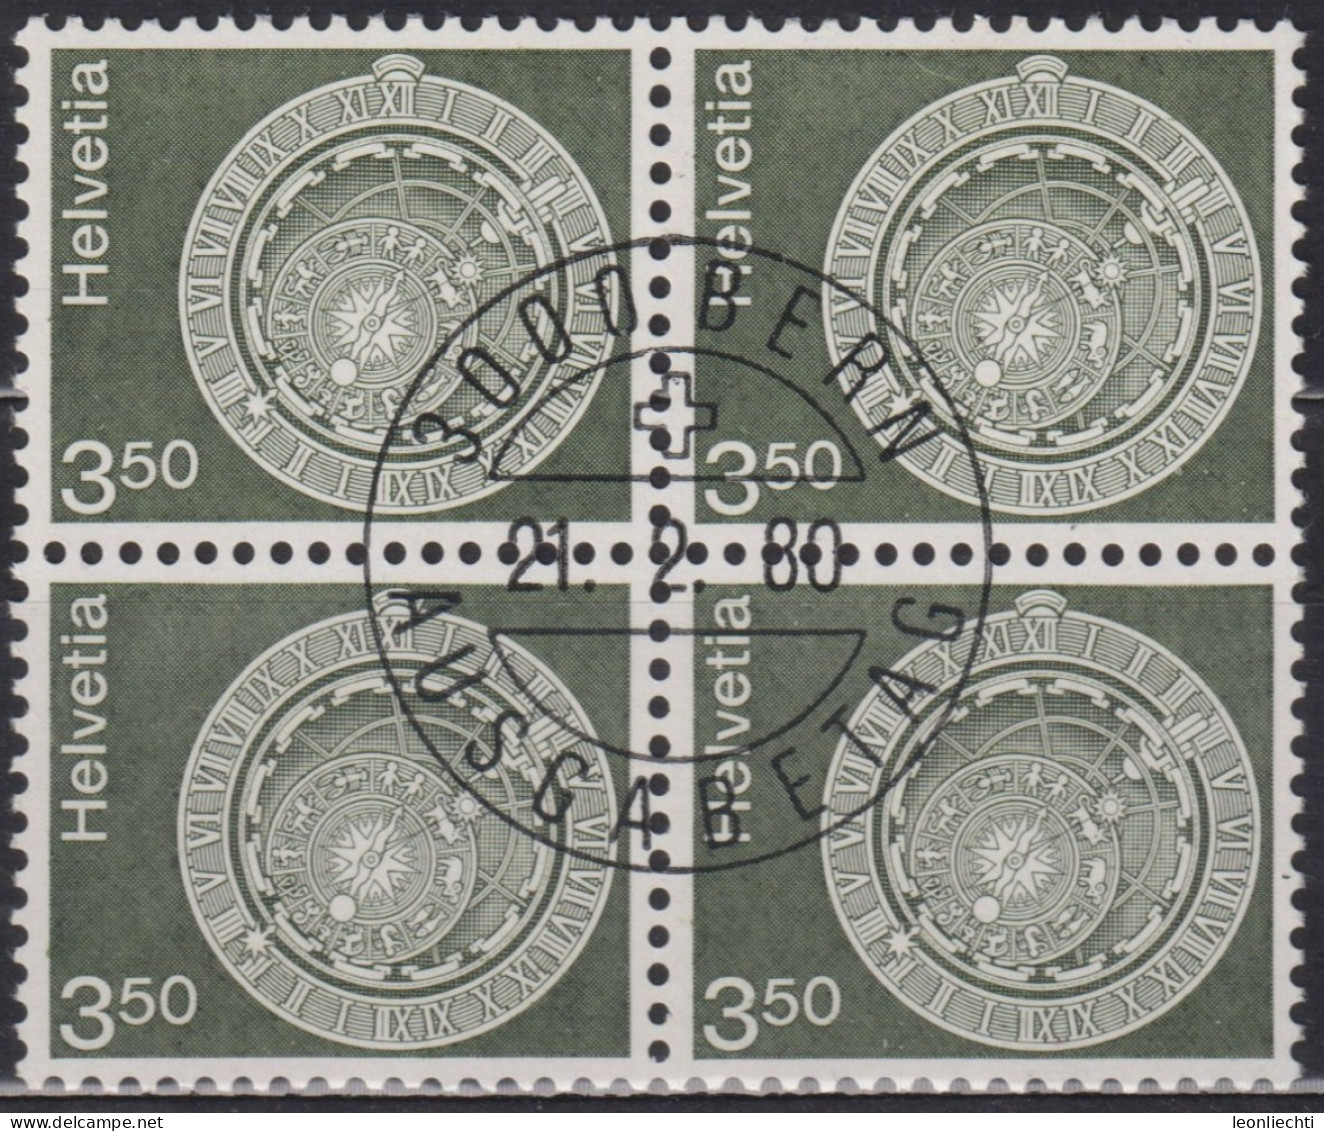 1980 Schweiz ET ° Zum: CH 613, MI: CH 1169, Astronomische Uhr, Bern, - Clocks